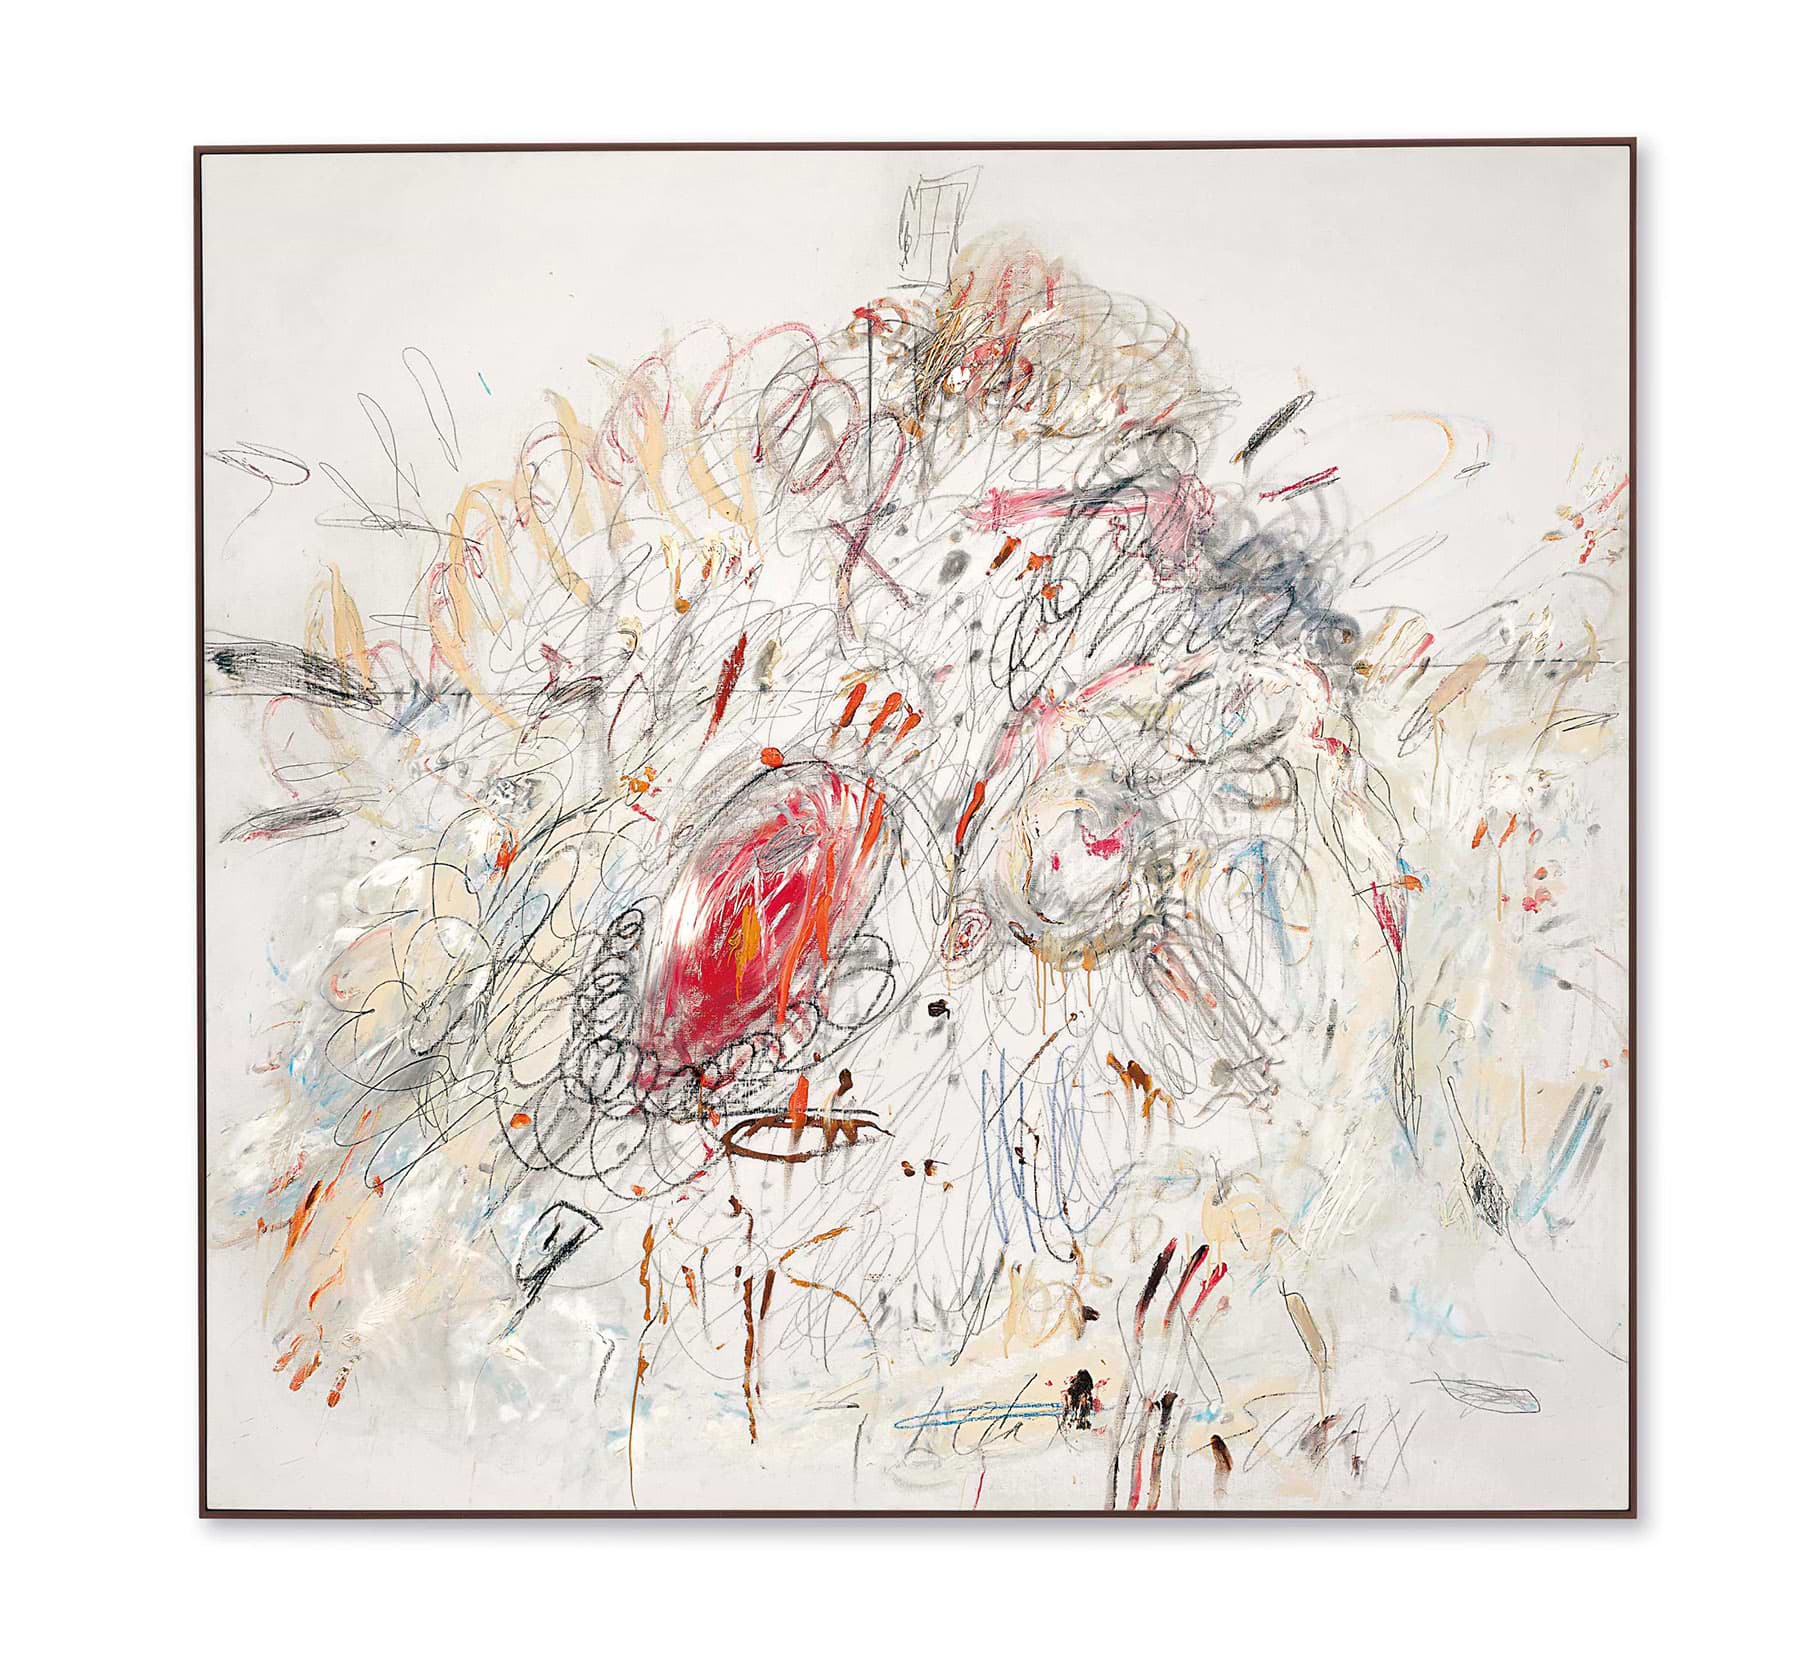 Сай Твомбли (1928-2011) «Леда и лебедь». Картина продана за 52,9 миллиона долларов Источник: christies.com